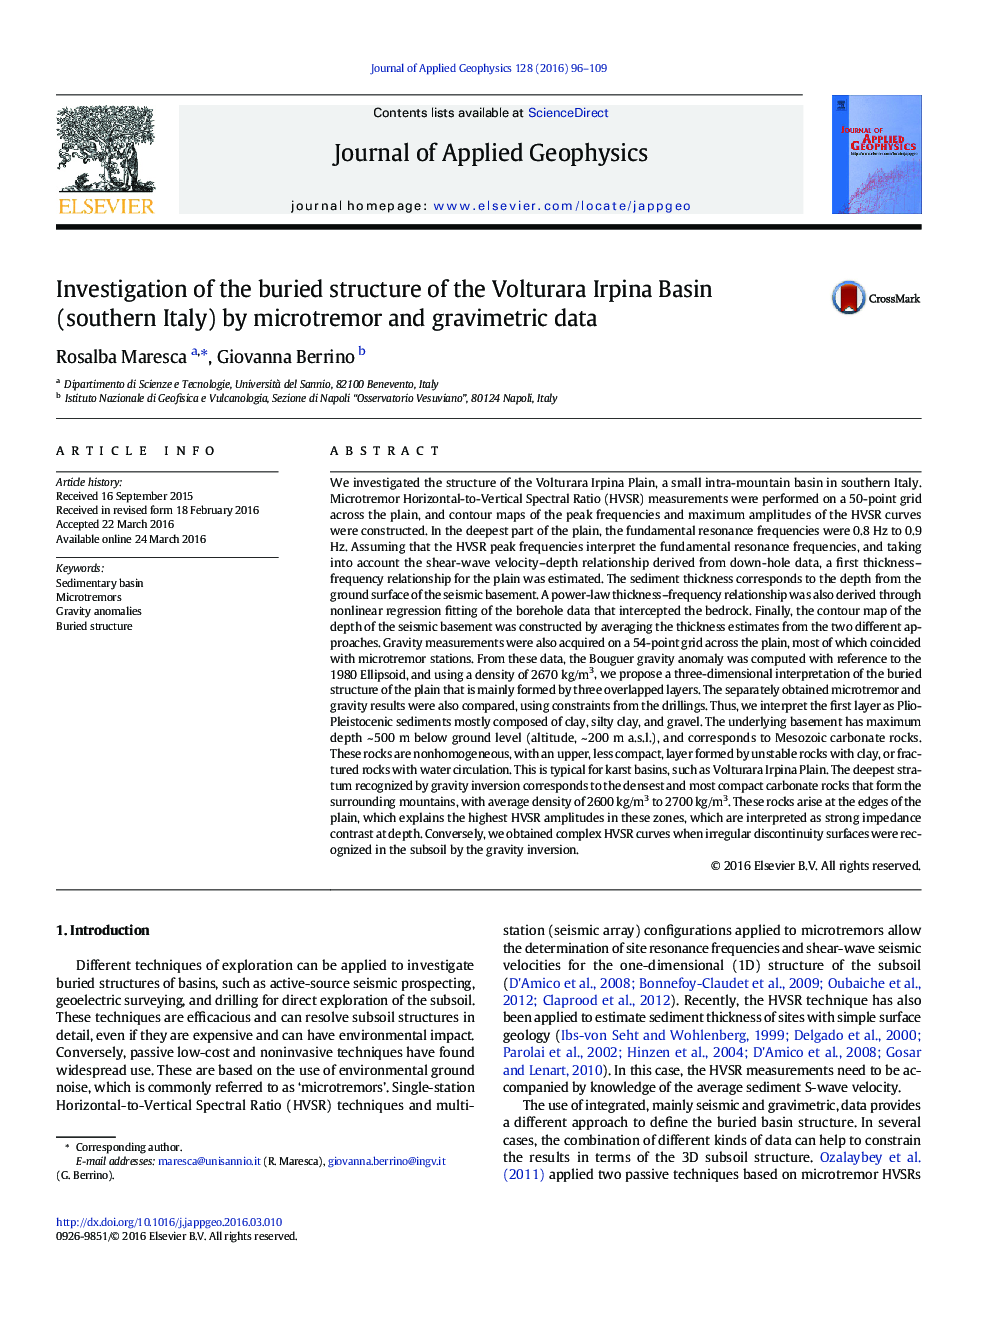 بررسی ساختار دفن شده حوضه ولتوراار ایرپینا (جنوب ایتالیا) توسط داده های میکروتیمور و گرانش 